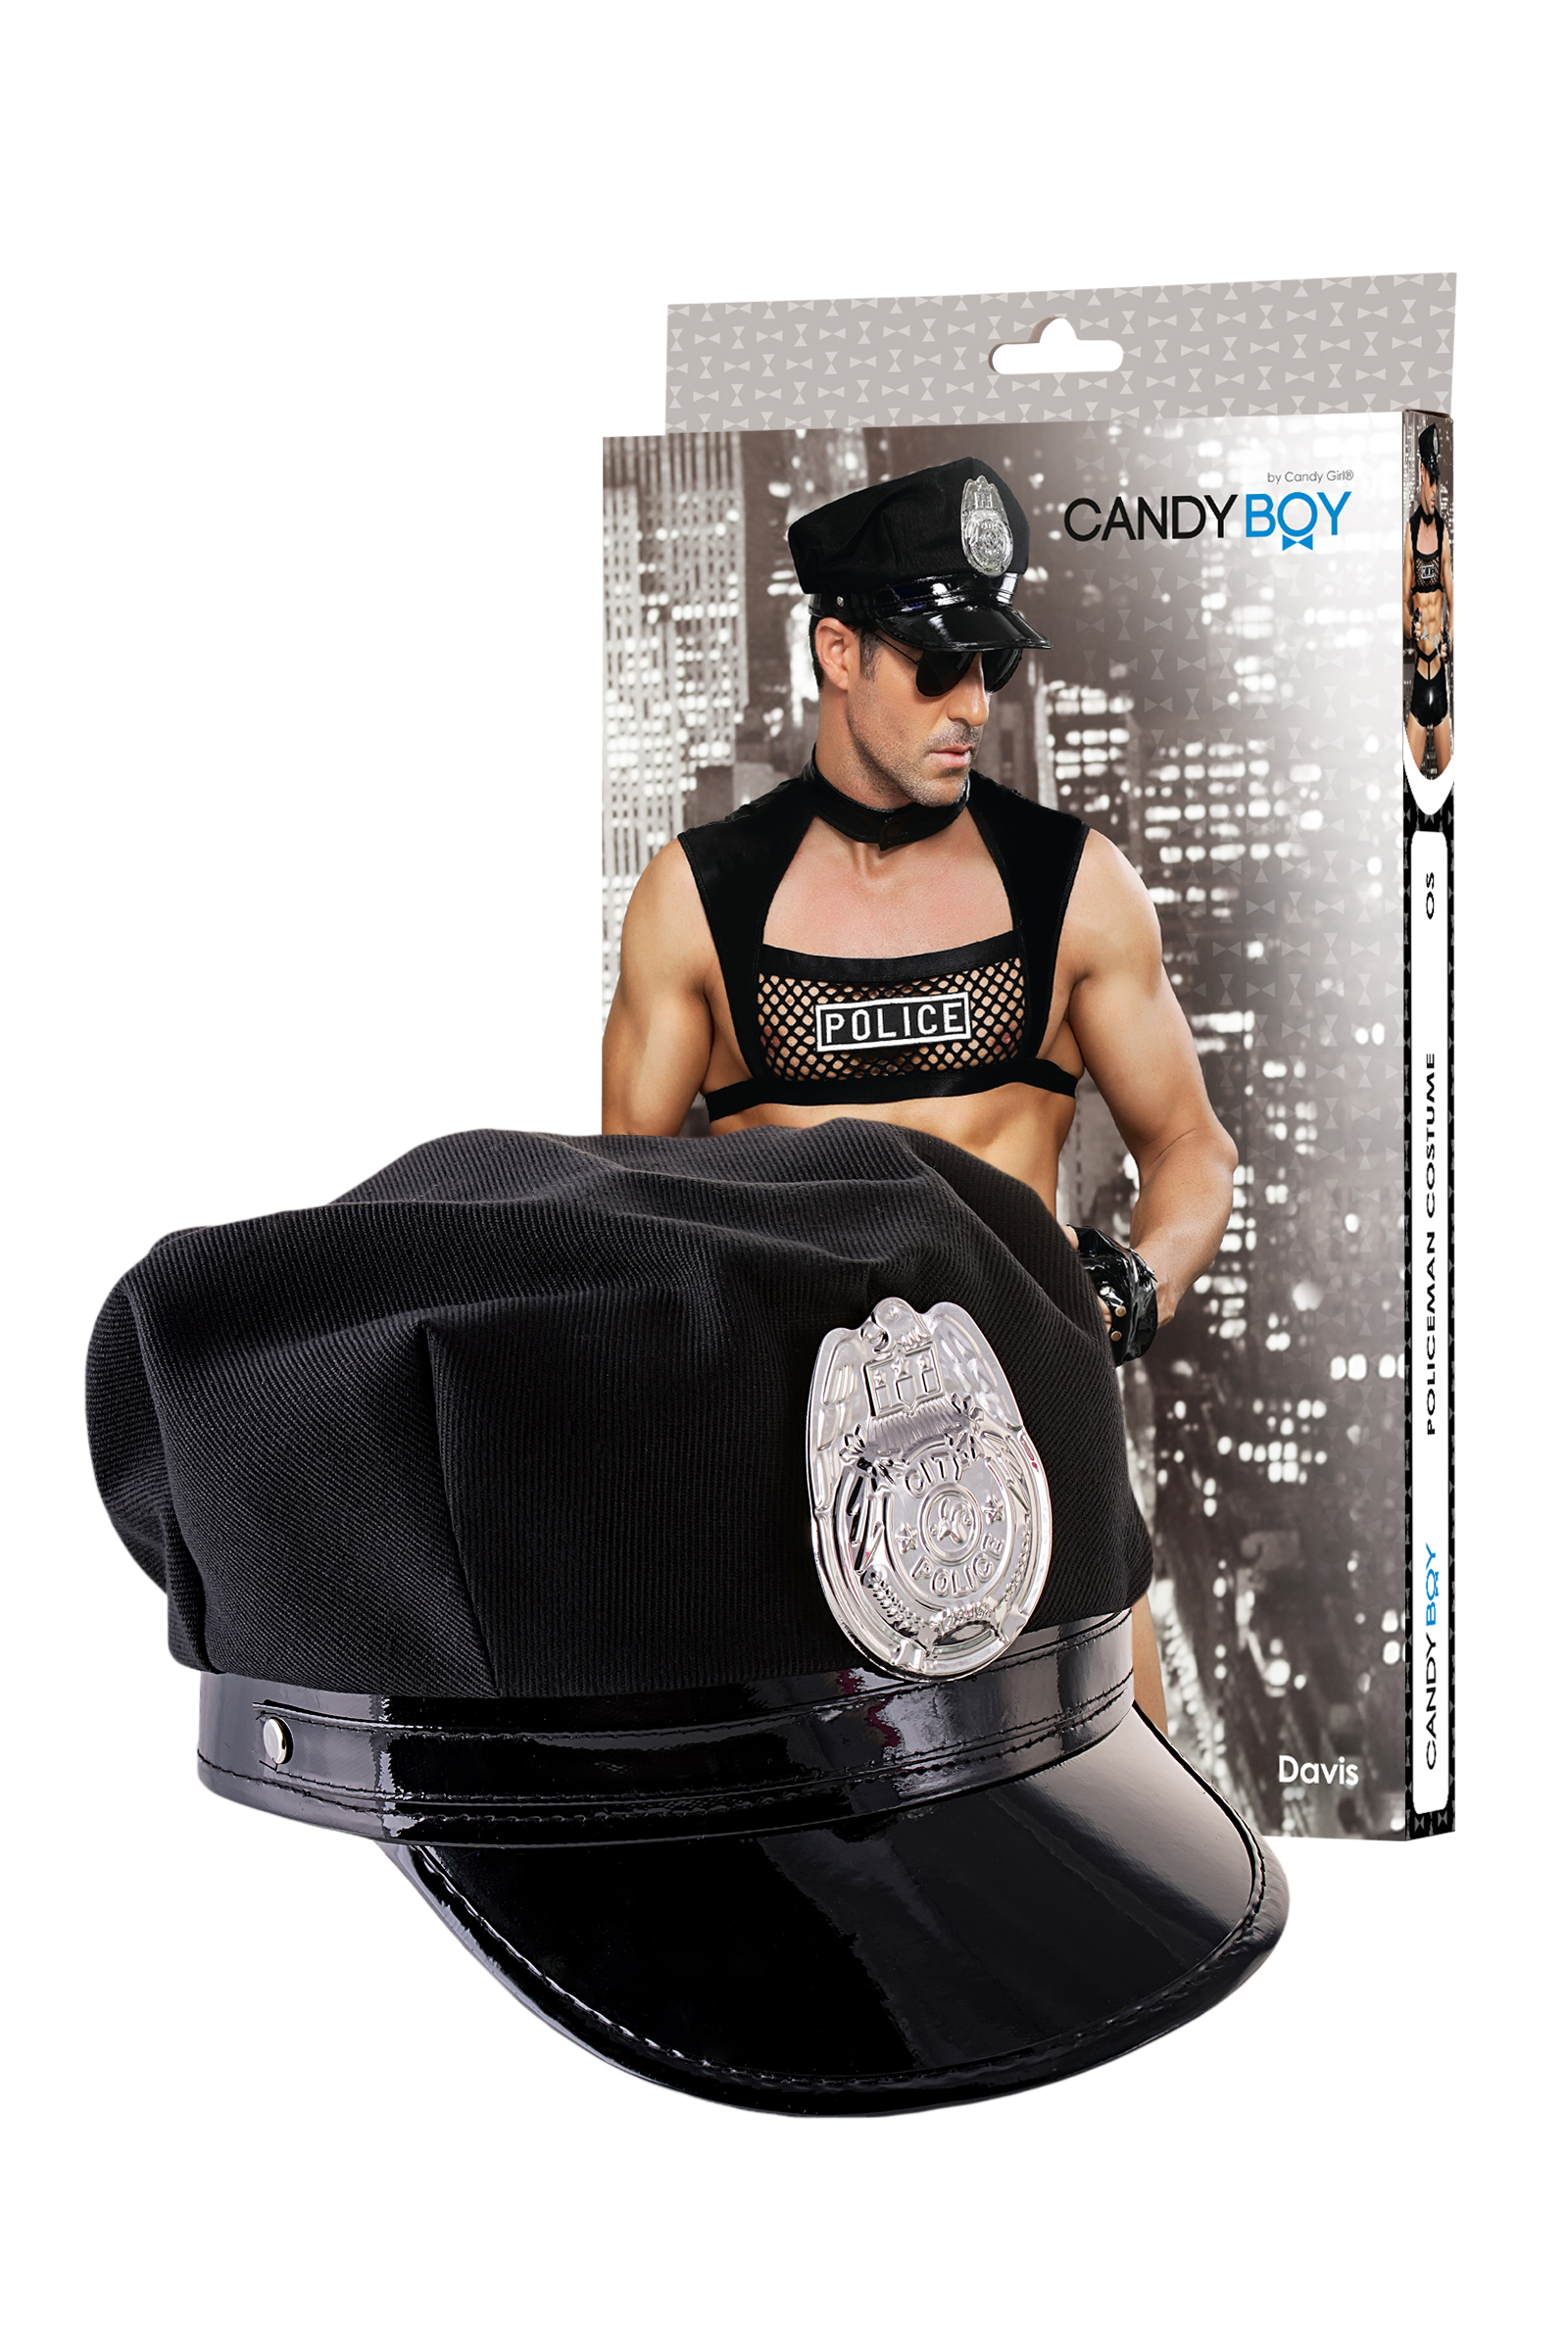 Костюм полицейского Candy Boy Davis, черный, OS. Фото N6